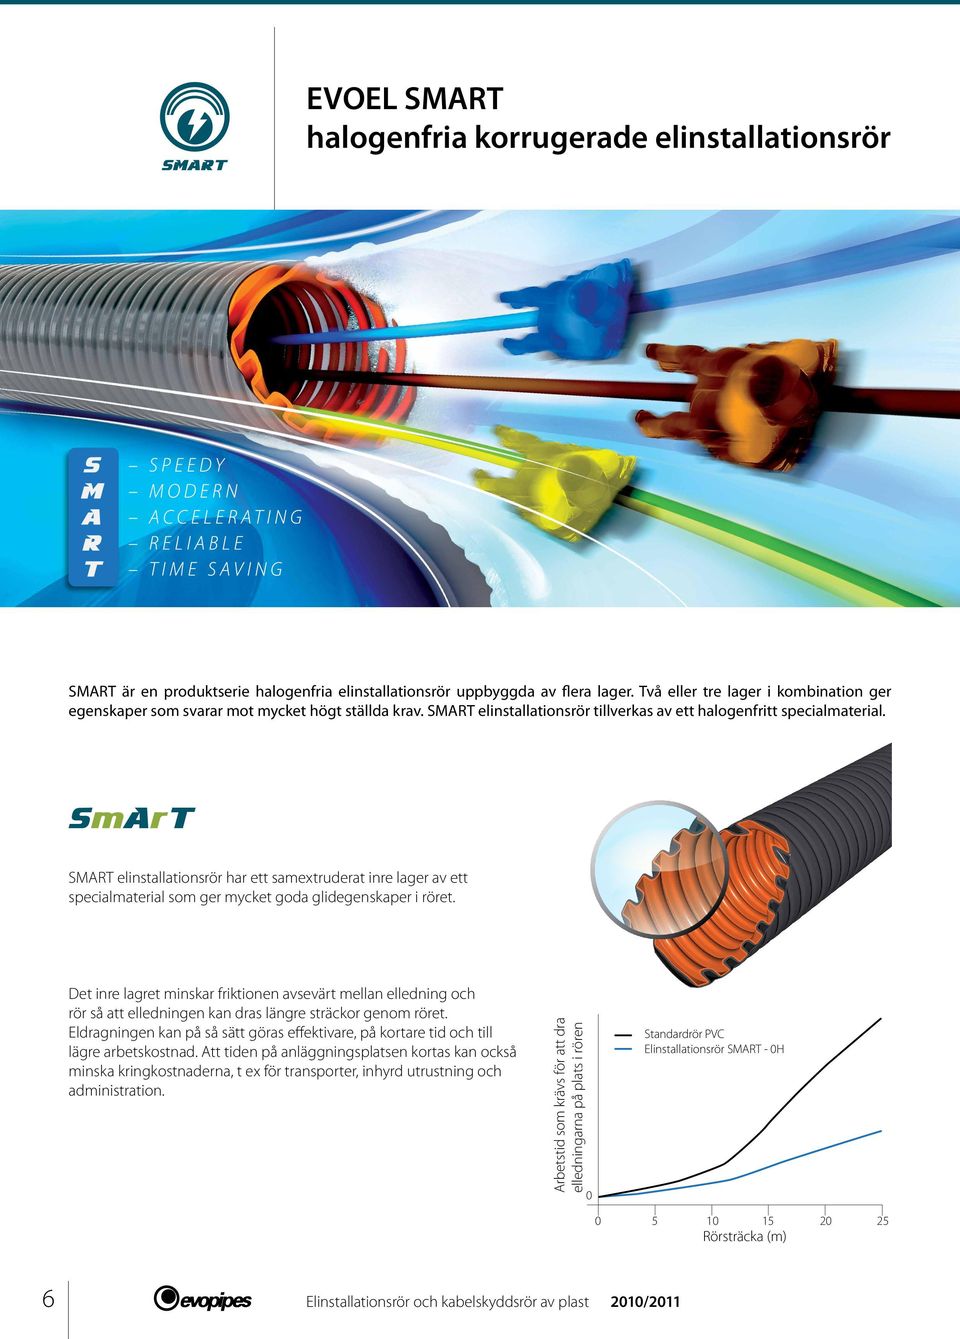 SmArT SMART elinstallationsrör har ett samextruderat inre lager av ett specialmaterial som ger mycket goda glidegenskaper i röret.